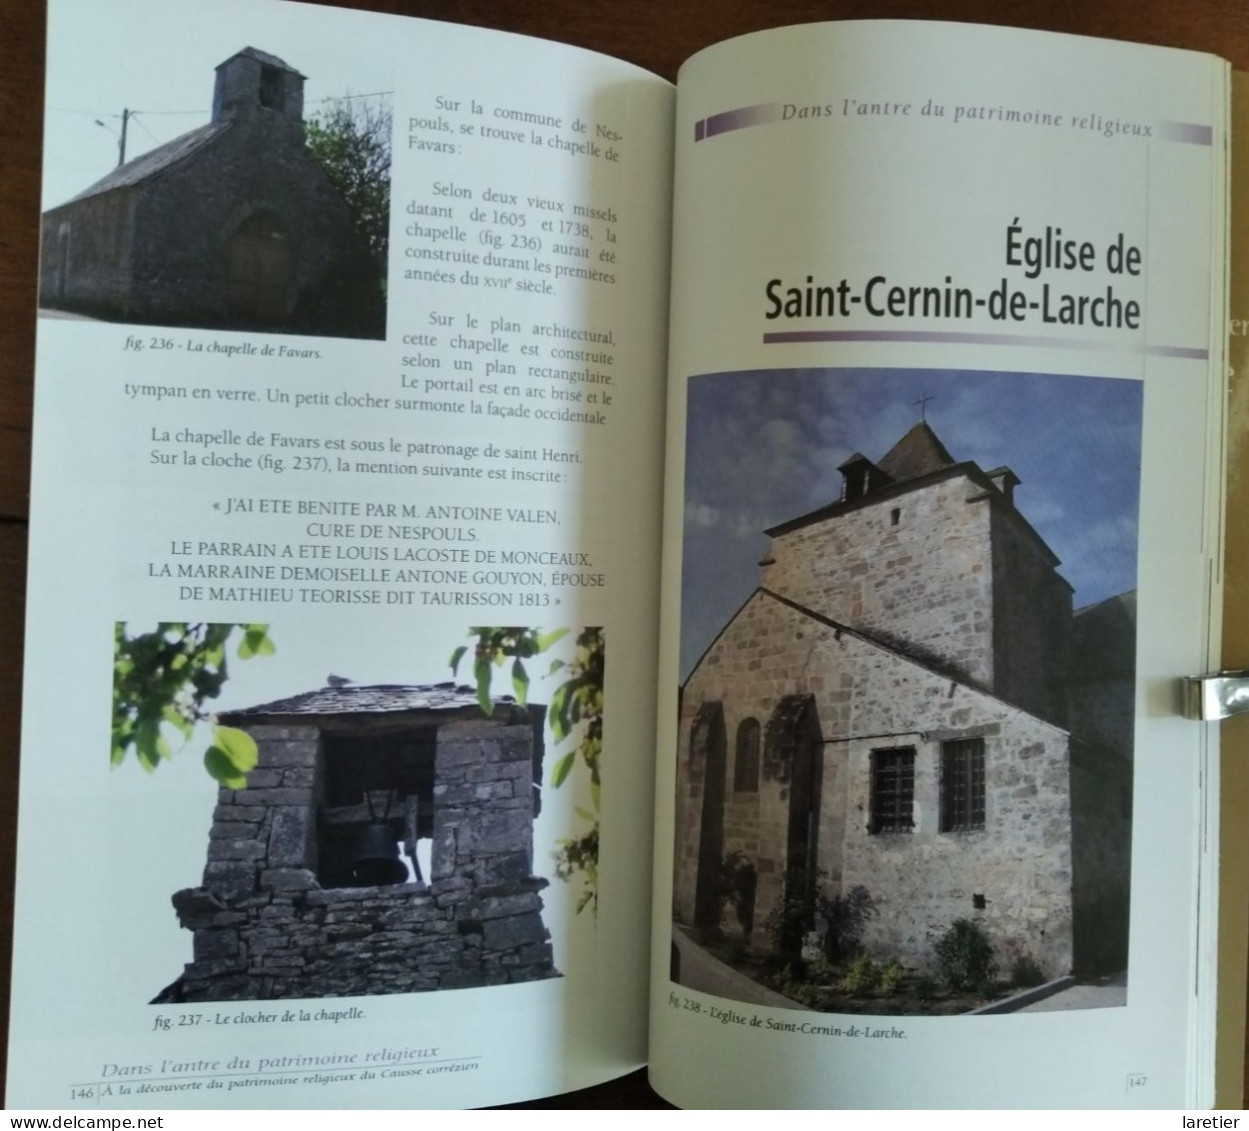 Les églises du Causse Corrézien - Valérie Legouffe - Limousin - Corrèze (19)